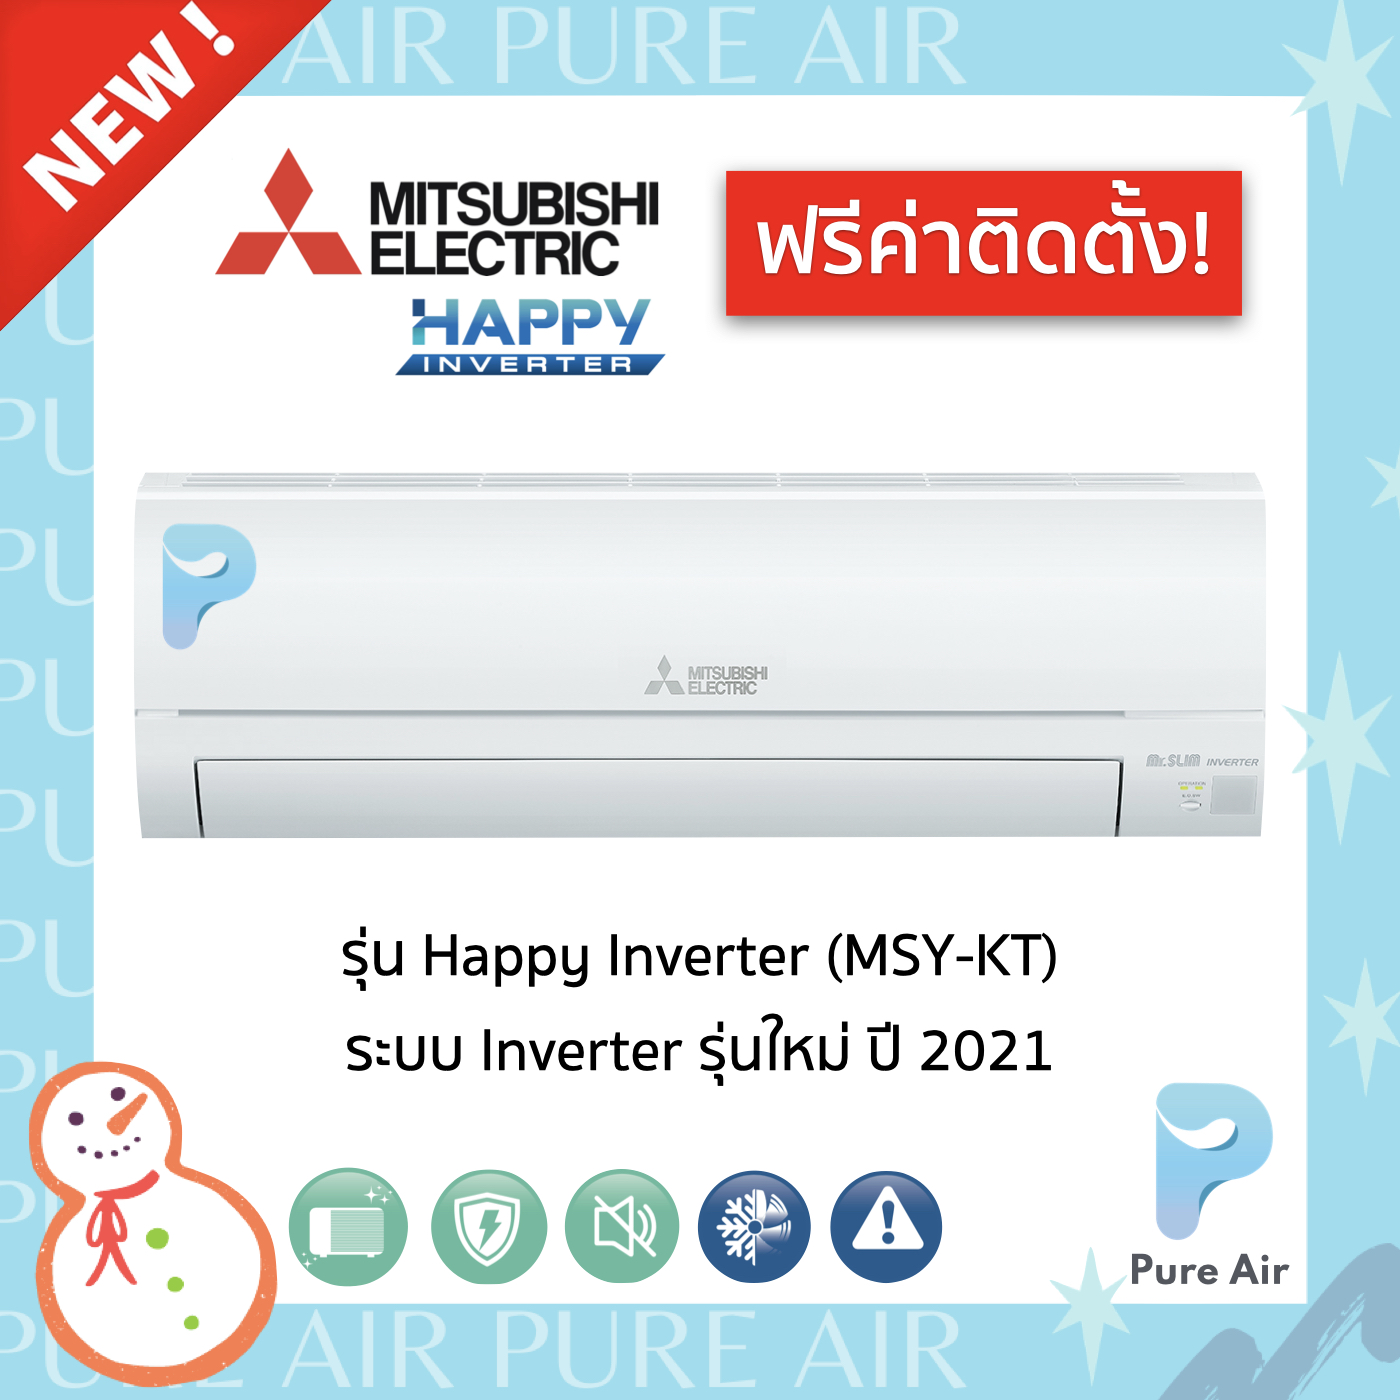 ?ฟรีค่าติดตั้ง? Mitsubishi Electric Mr.Slim Happy Inverter ( MSY-KT) เครื่องปรับอากาศ แอร์ติดผนัง ระบบ Inverter ปี 2021 ❄️ประกันคอม 5 ปี แผงคอยล์เย็น 3 ปี อะไหล่ 1ปี